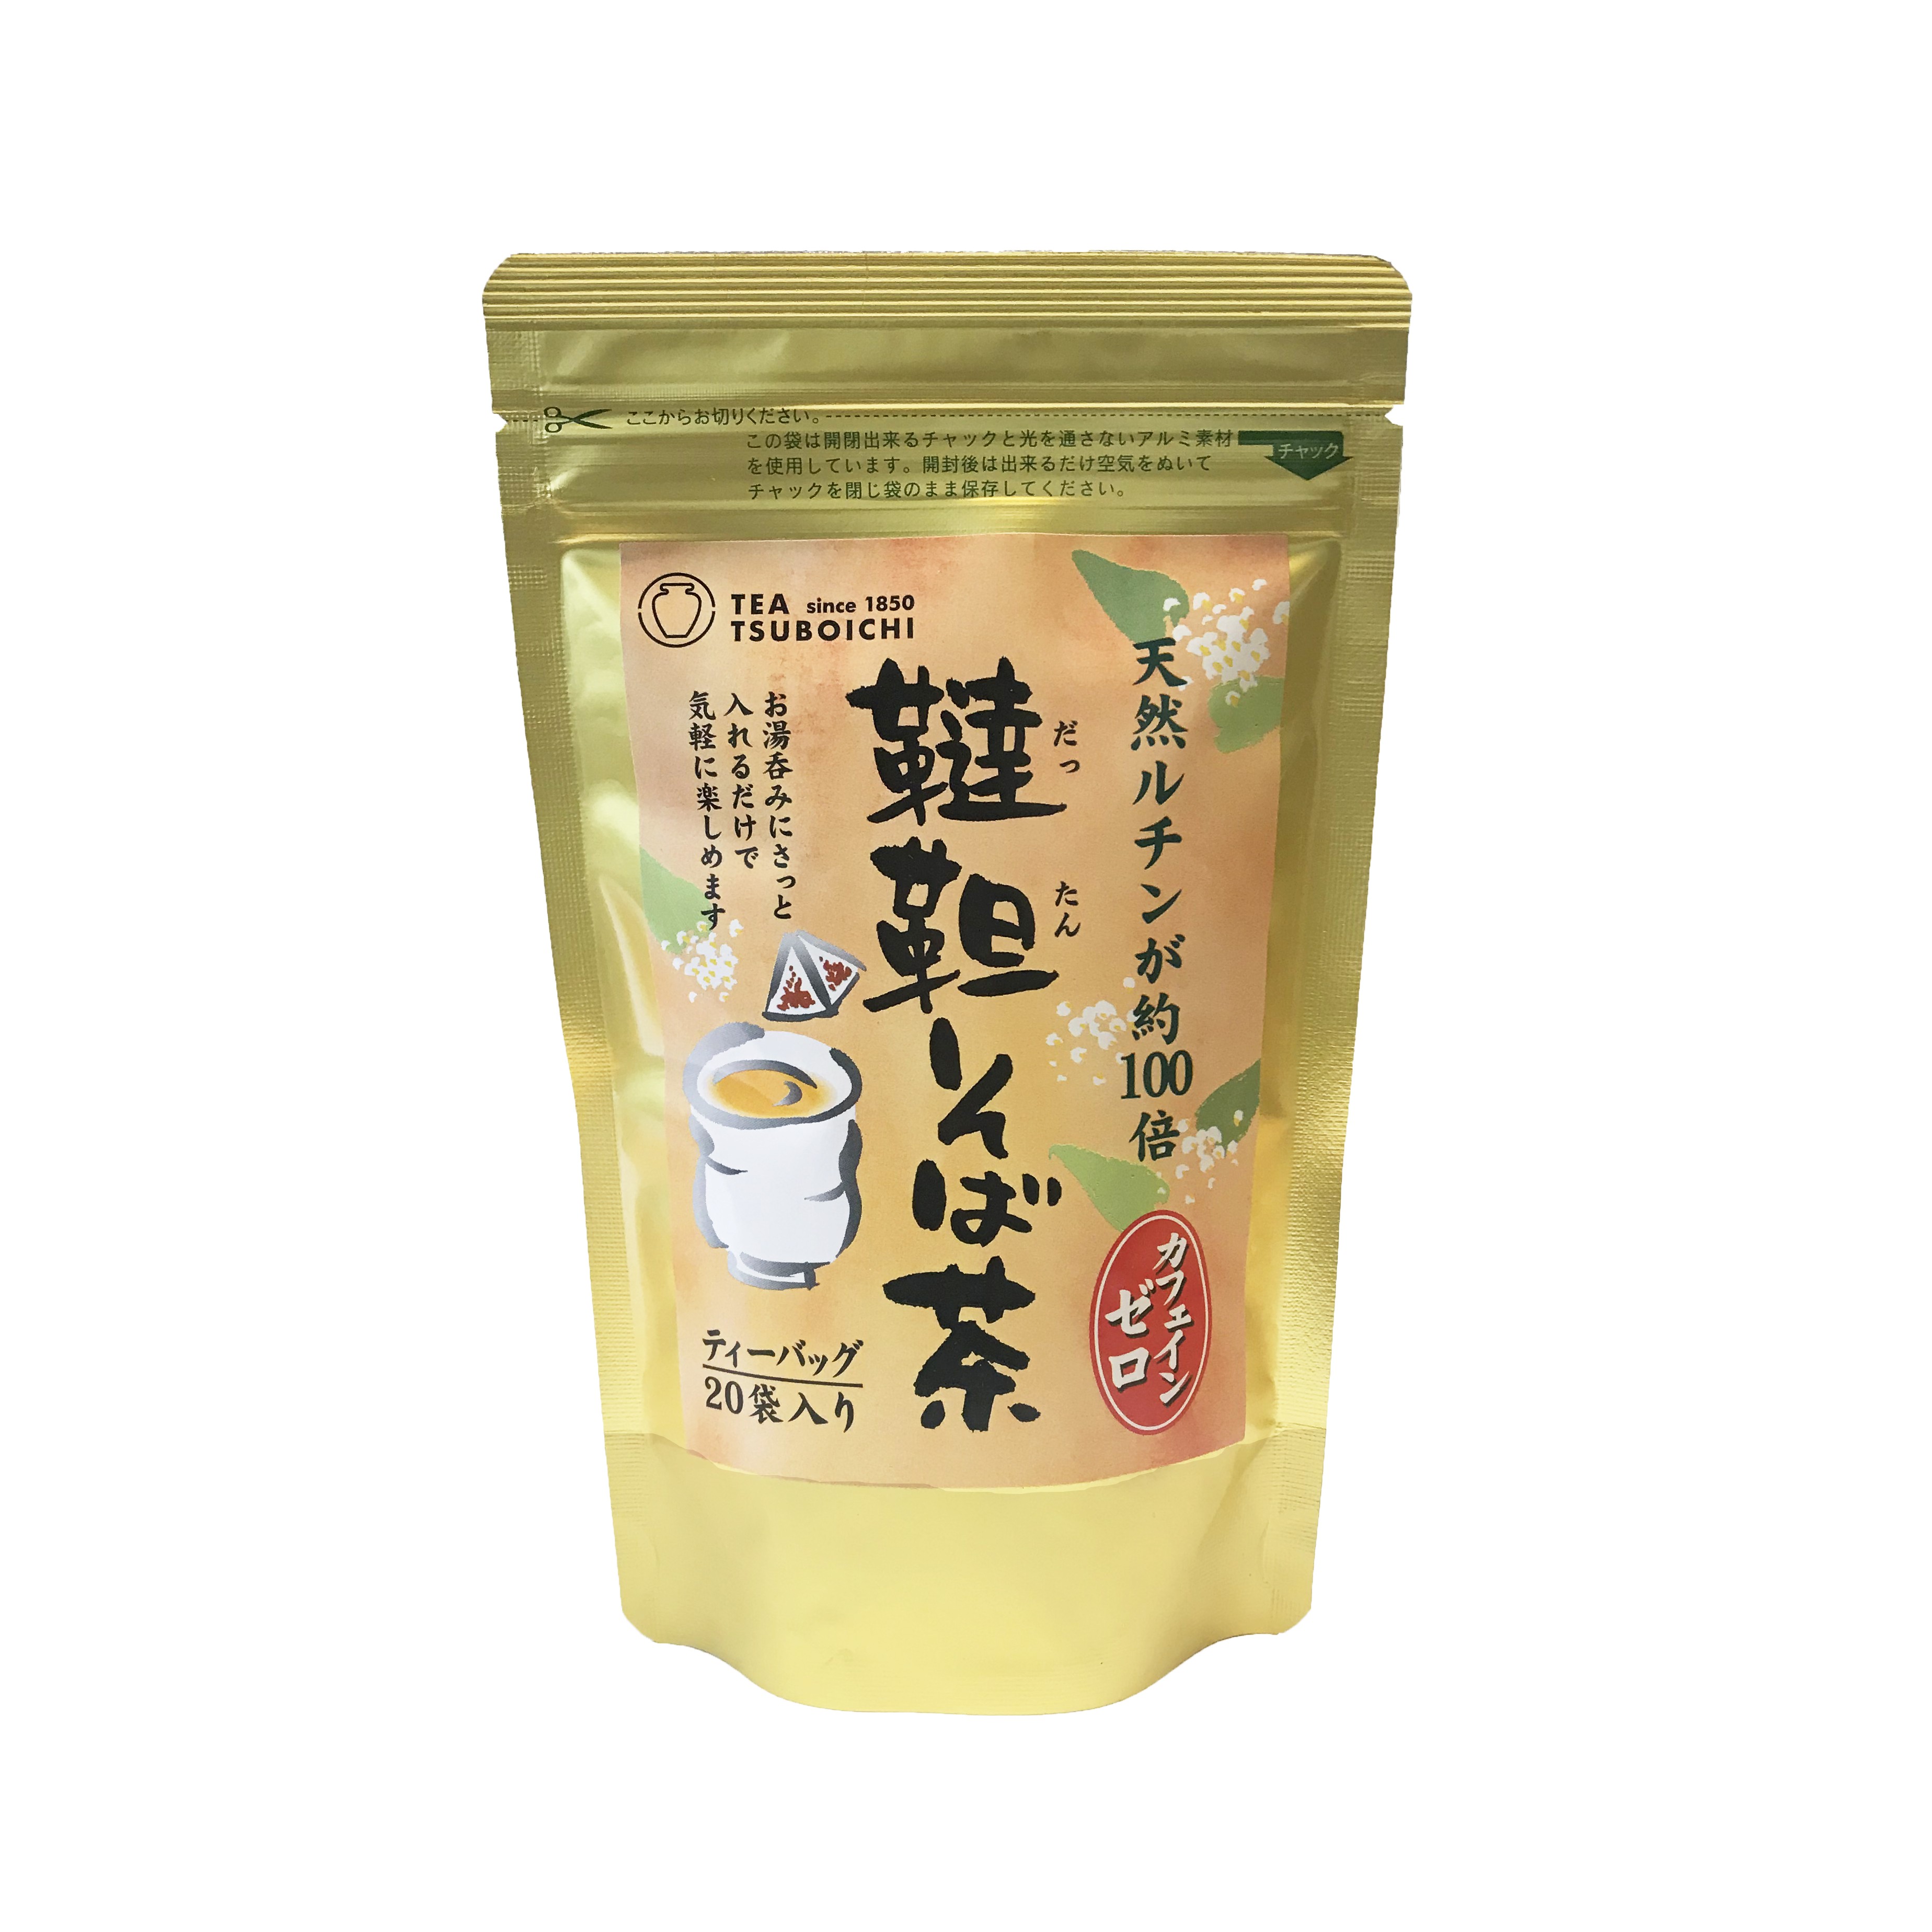 Kit bubble tea sucre roux 8 parts 816g - Mon Panier d'Asie